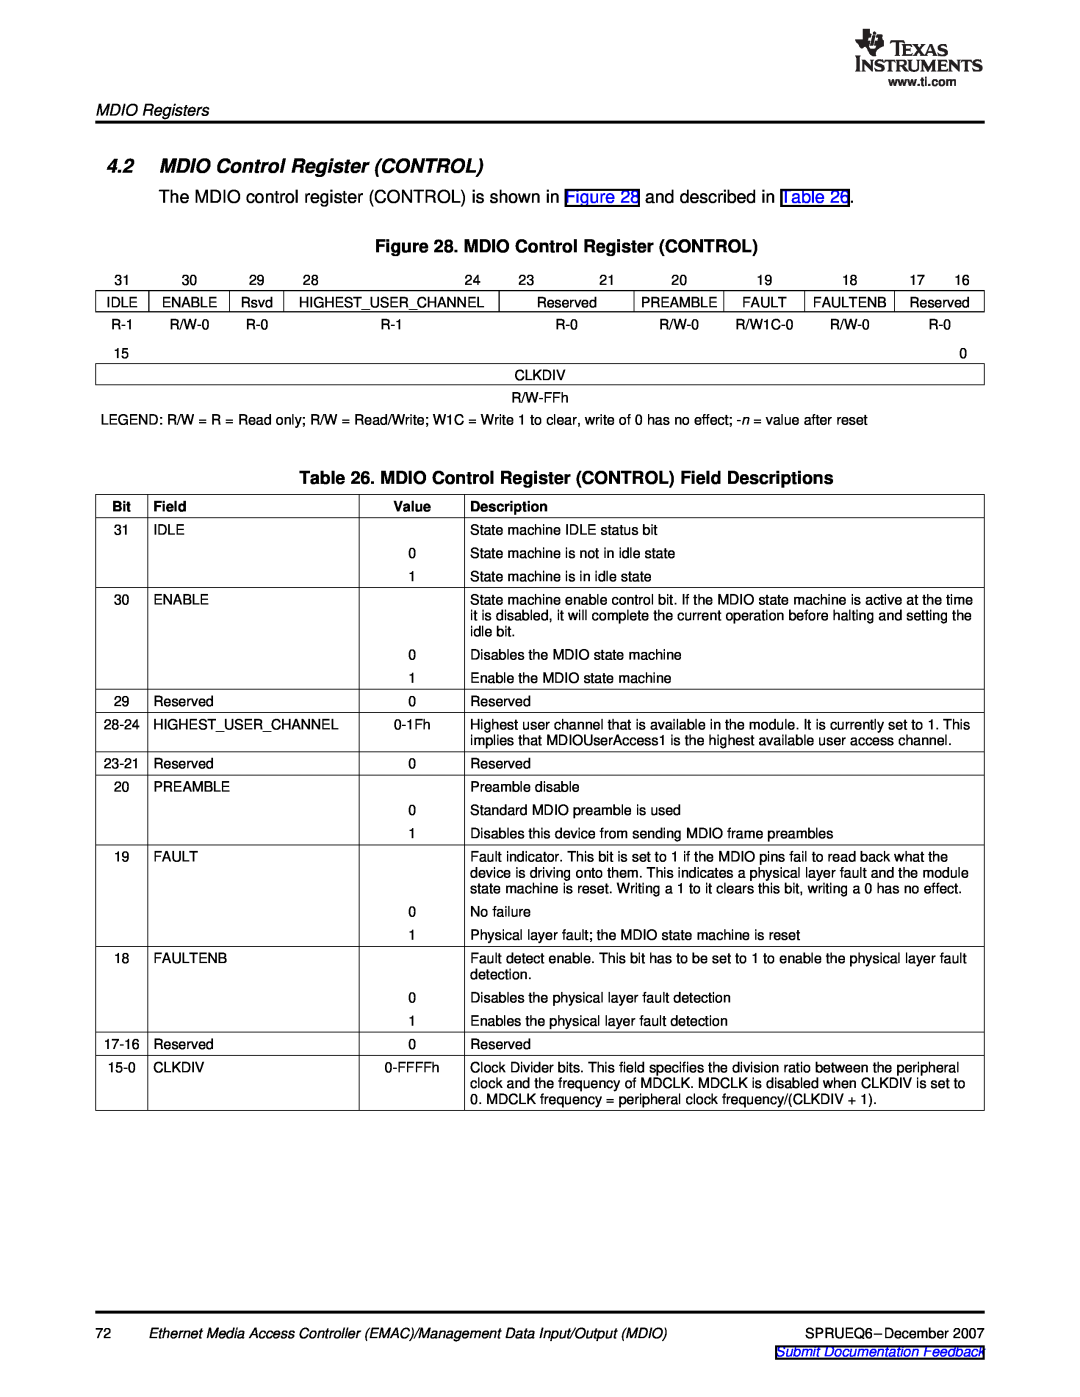 Texas Instruments TMS320DM646x manual MDIO Control Register CONTROL Field Descriptions, MDIO Registers 